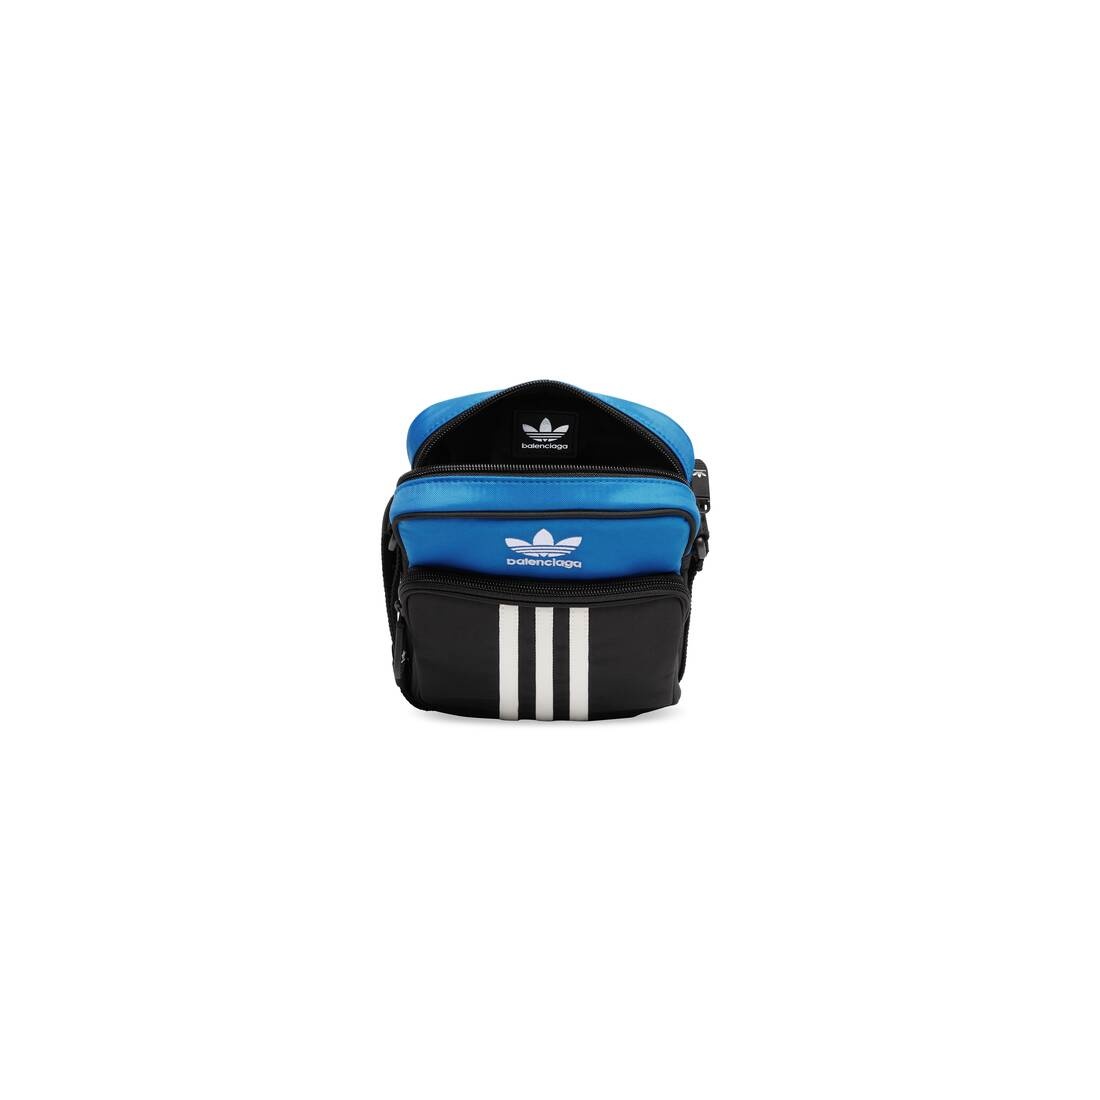 Men's Balenciaga / Adidas Small Crossbody Messenger Bag in Black - 5